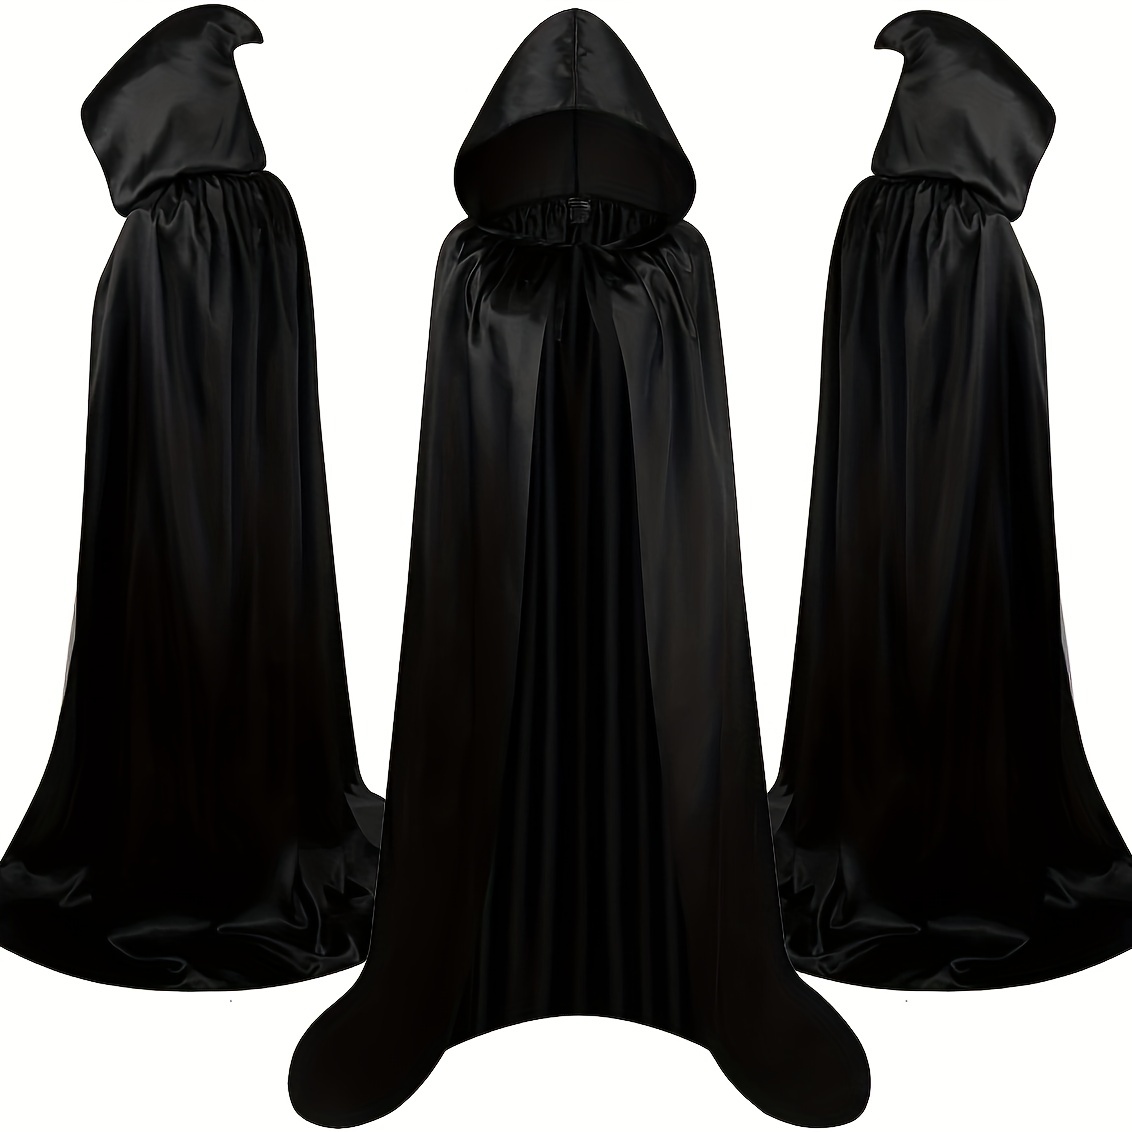 black hooded cloak costume